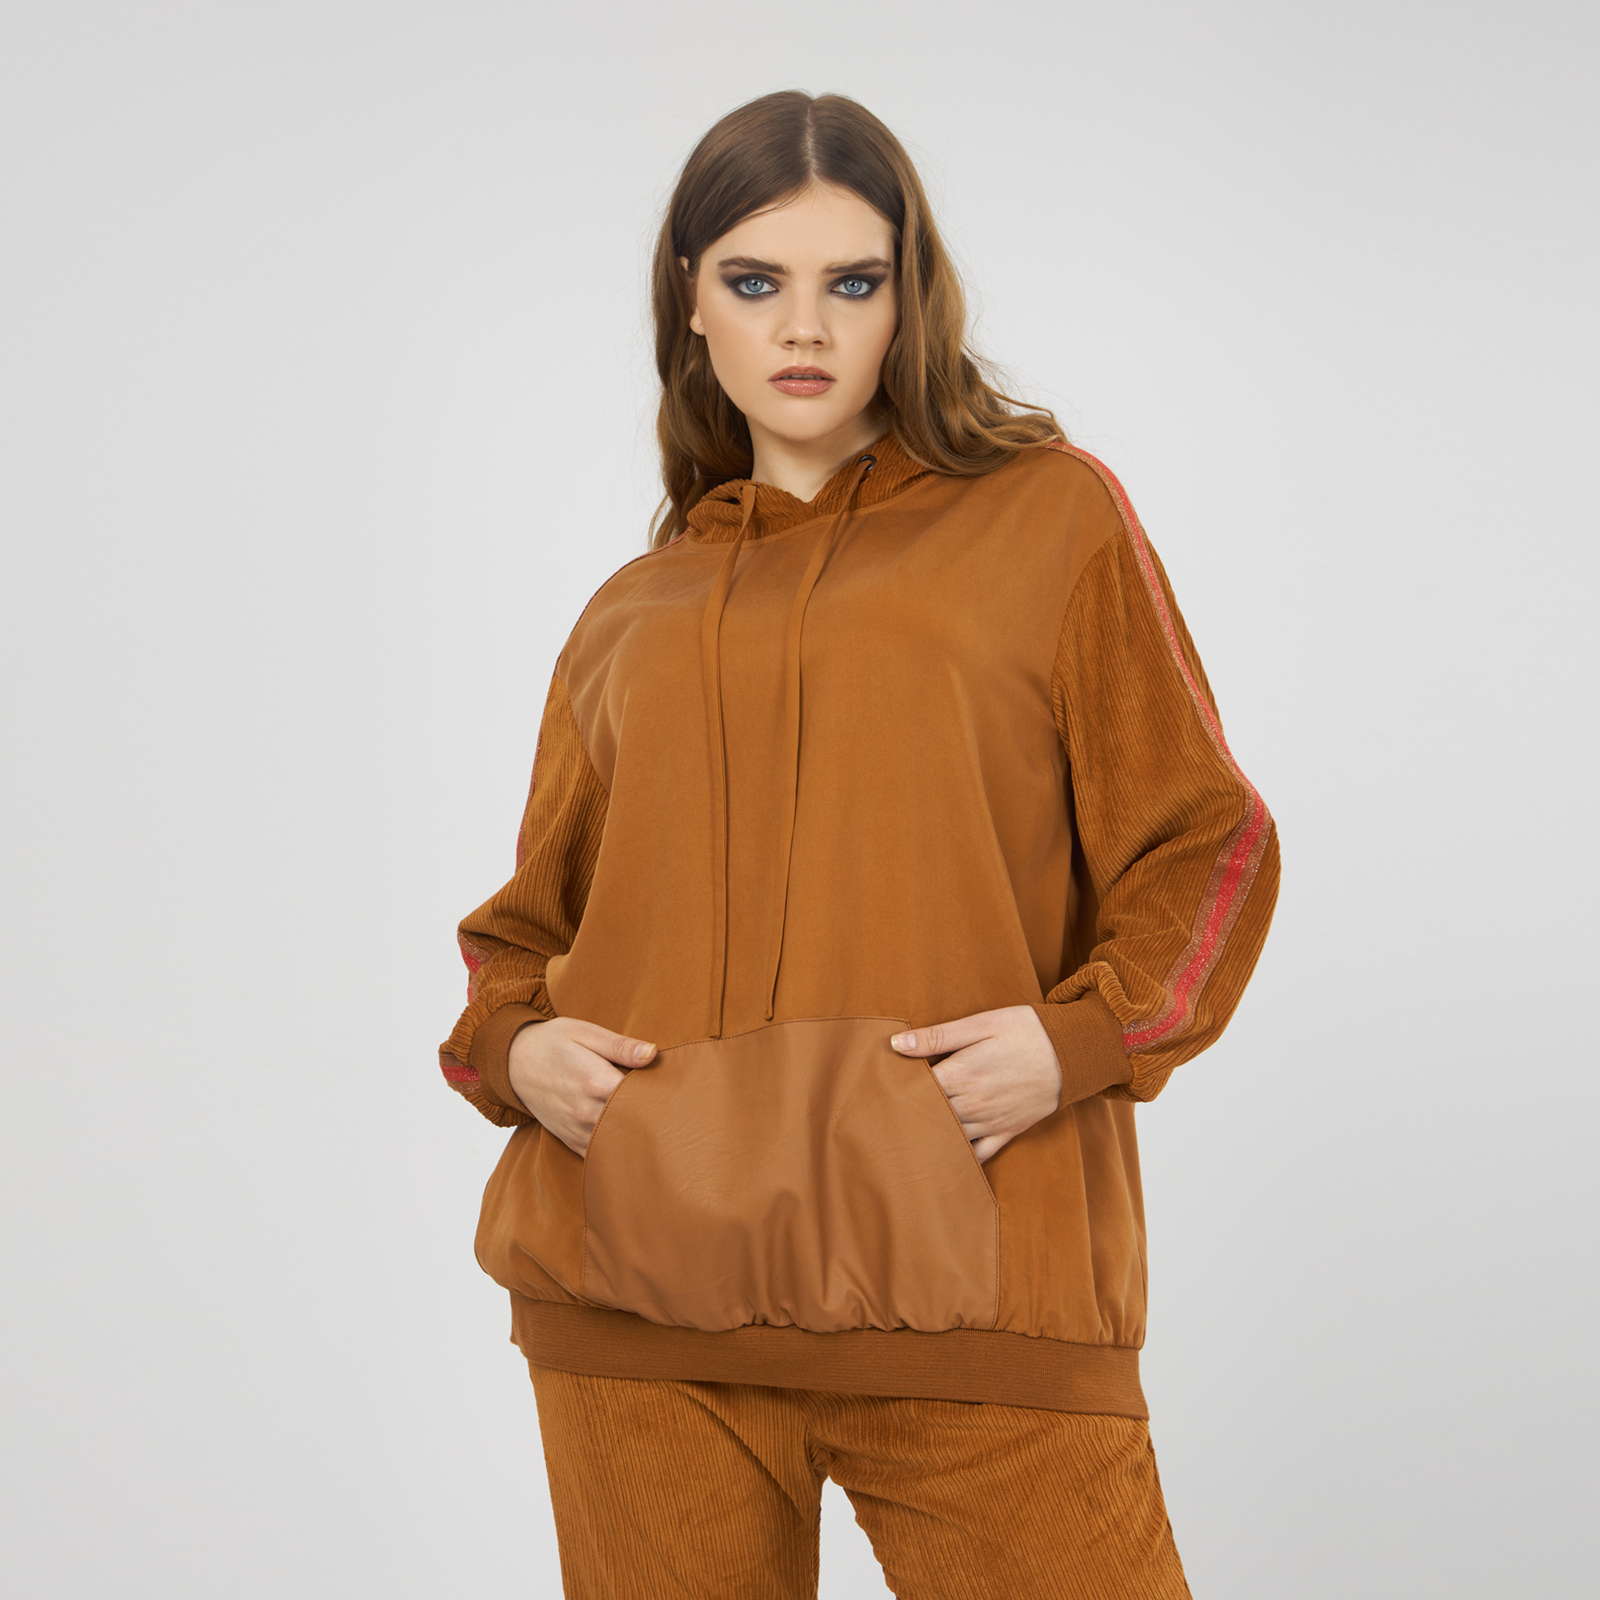 Μπλούζα hoodie με συνδυασμό υφασμάτων 8001.1028-camel